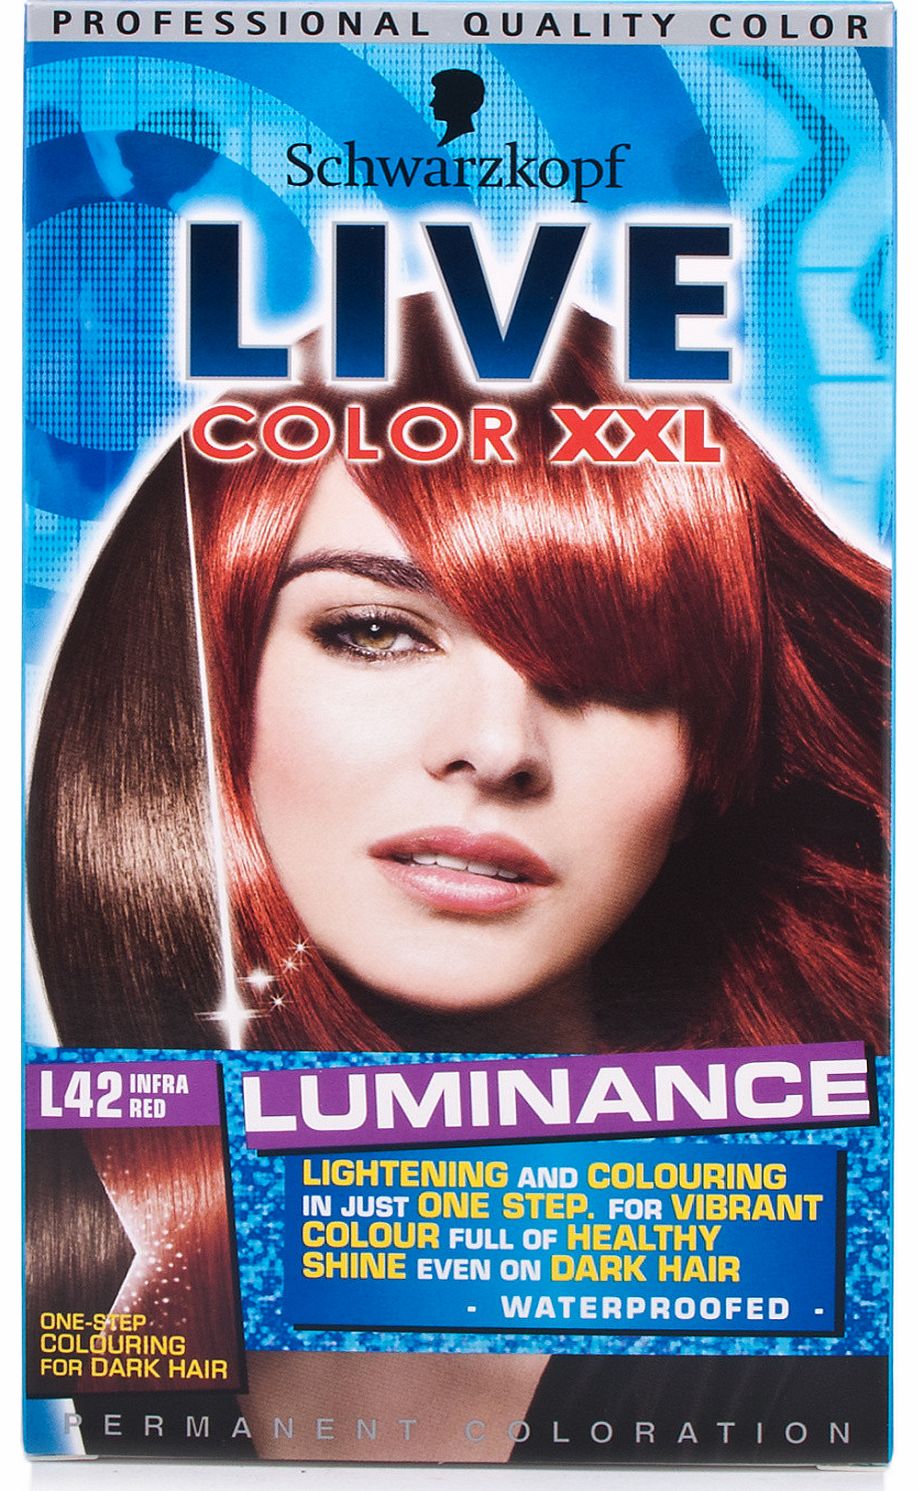 Live Colour XXL Luminance L42 Infra